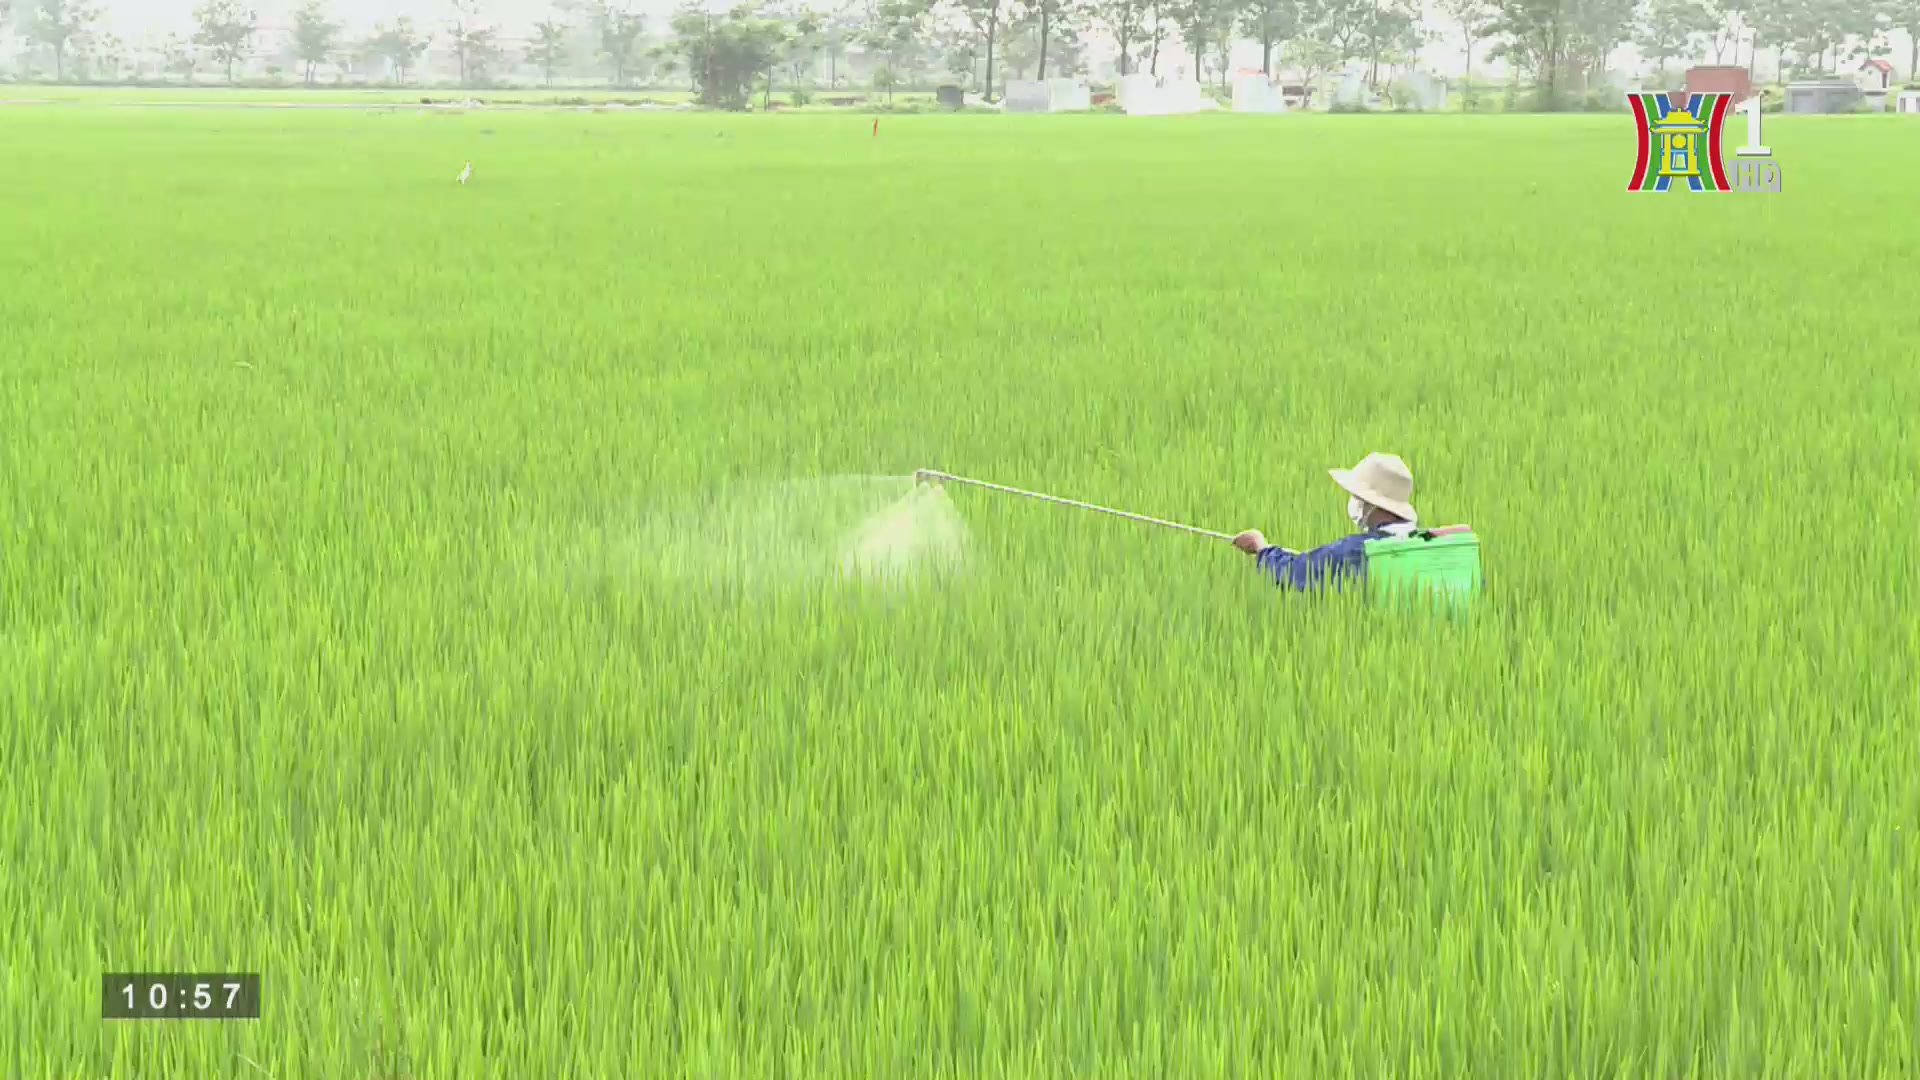 Quản lý chất lượng an toàn thực phẩm: Hiệu quả canh tác lúa theo phương thức cải tiến SRI